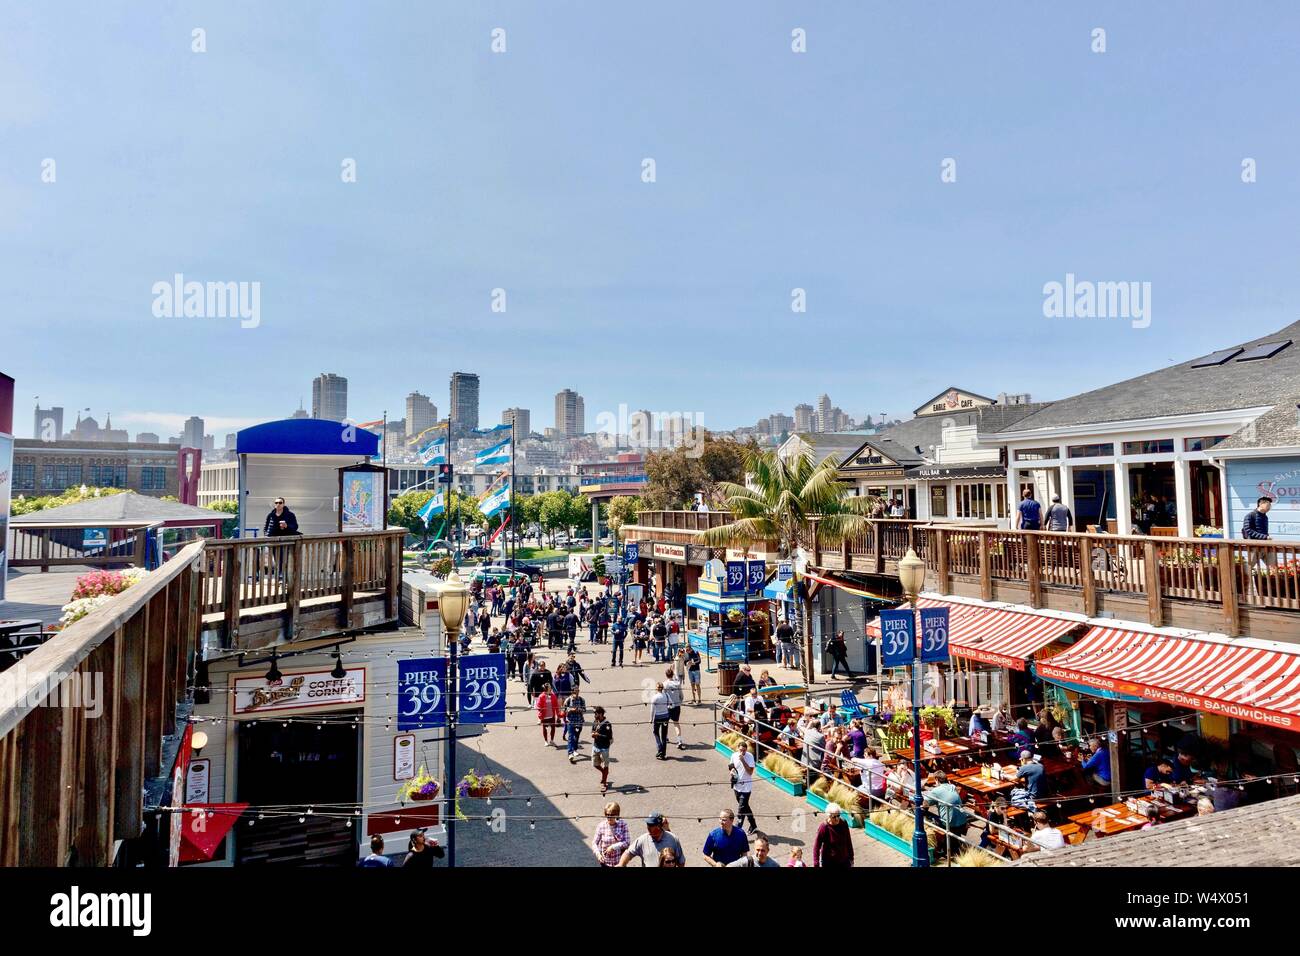 Pier 39 in San Francisco, Kalifornien Stockfoto